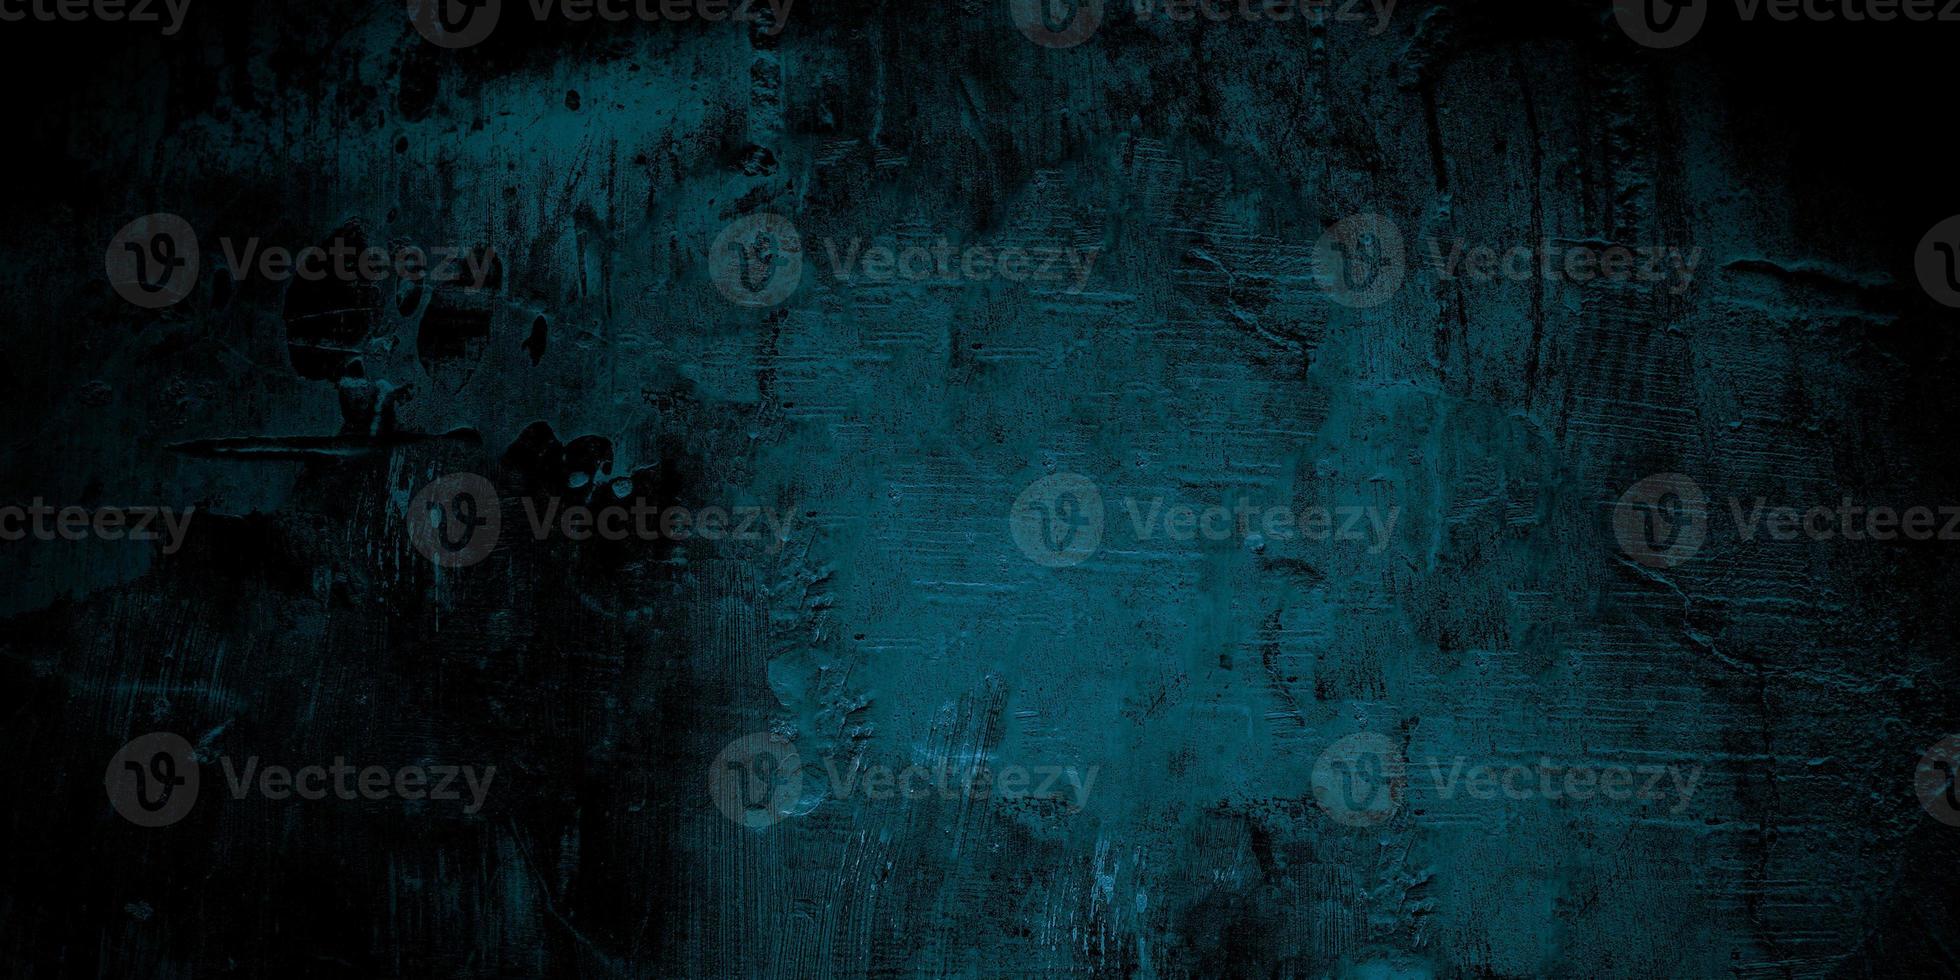 assustador parede azul escura rachada para o fundo foto